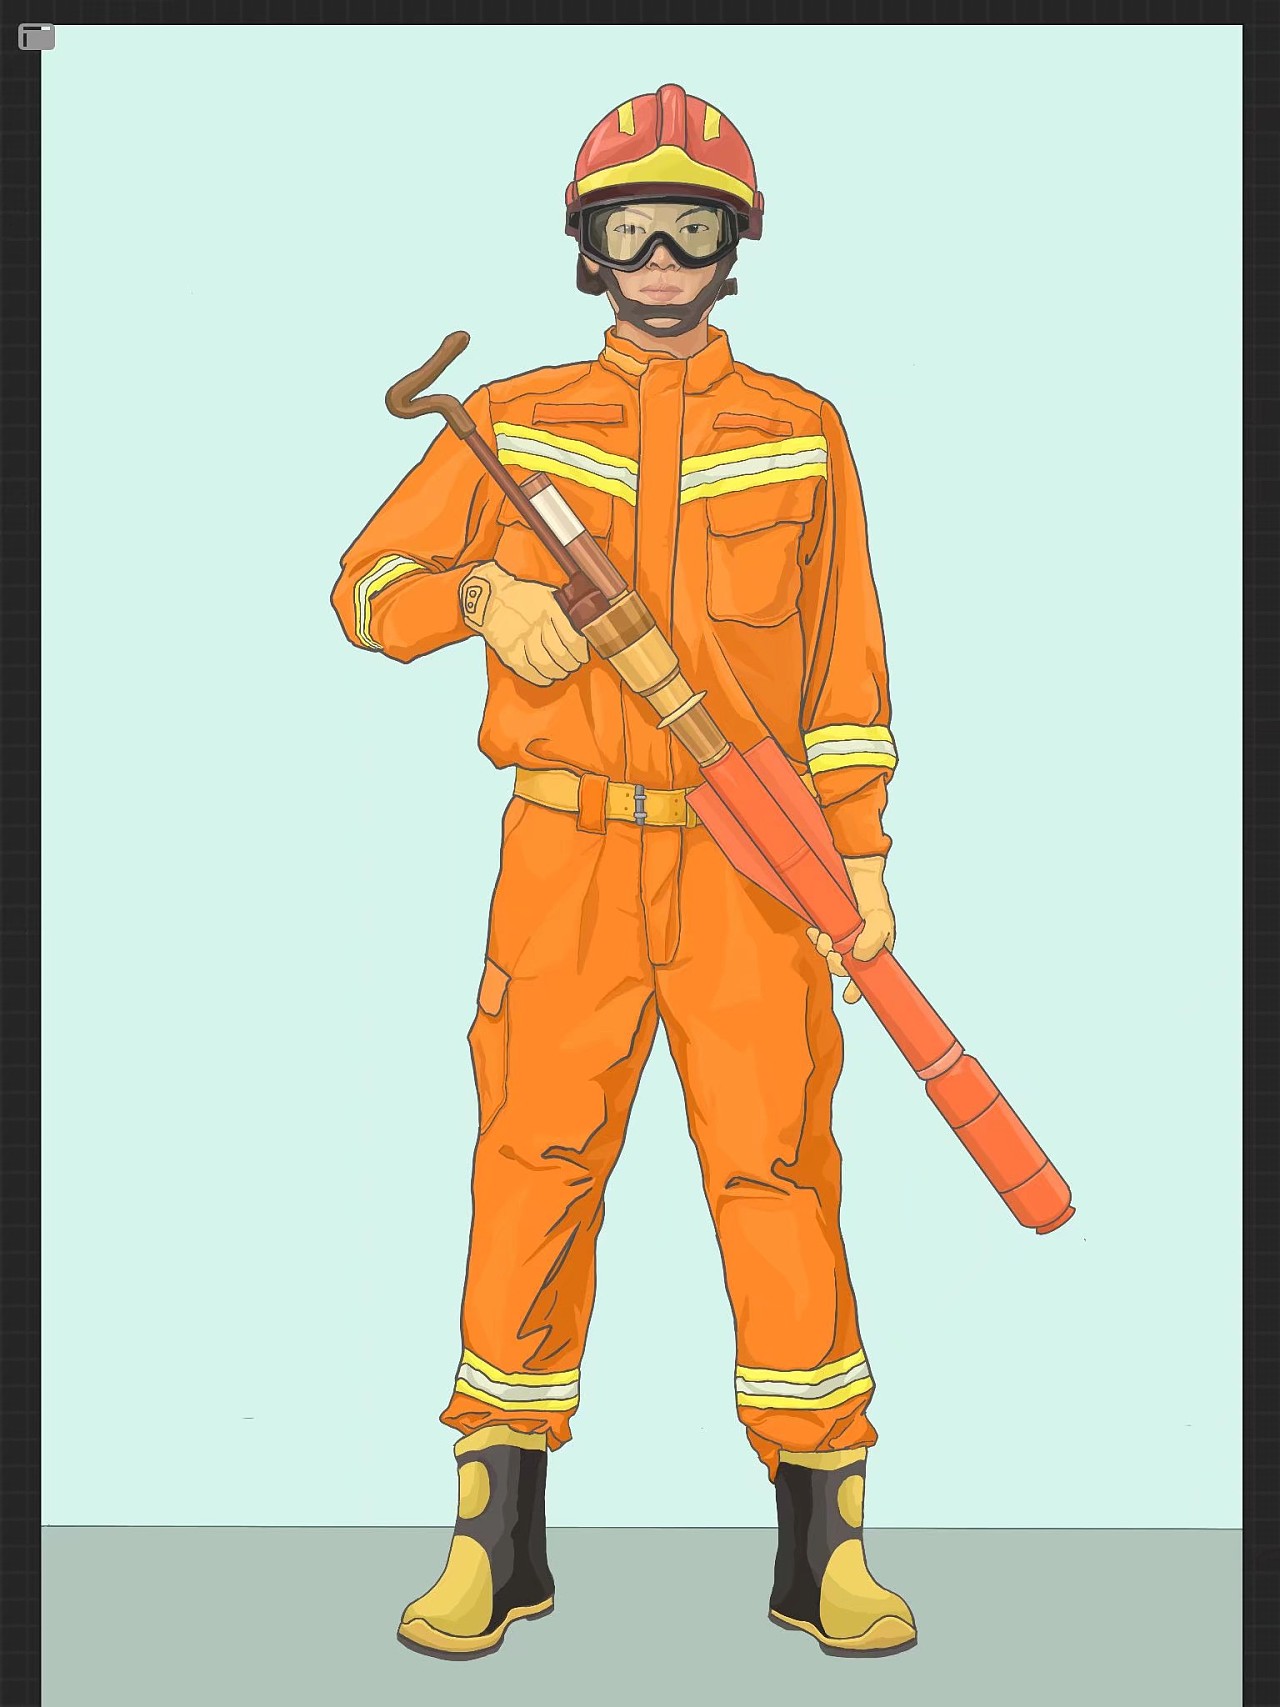 森林消防员：在逆行中实现自己的价值_凤凰网资讯_凤凰网